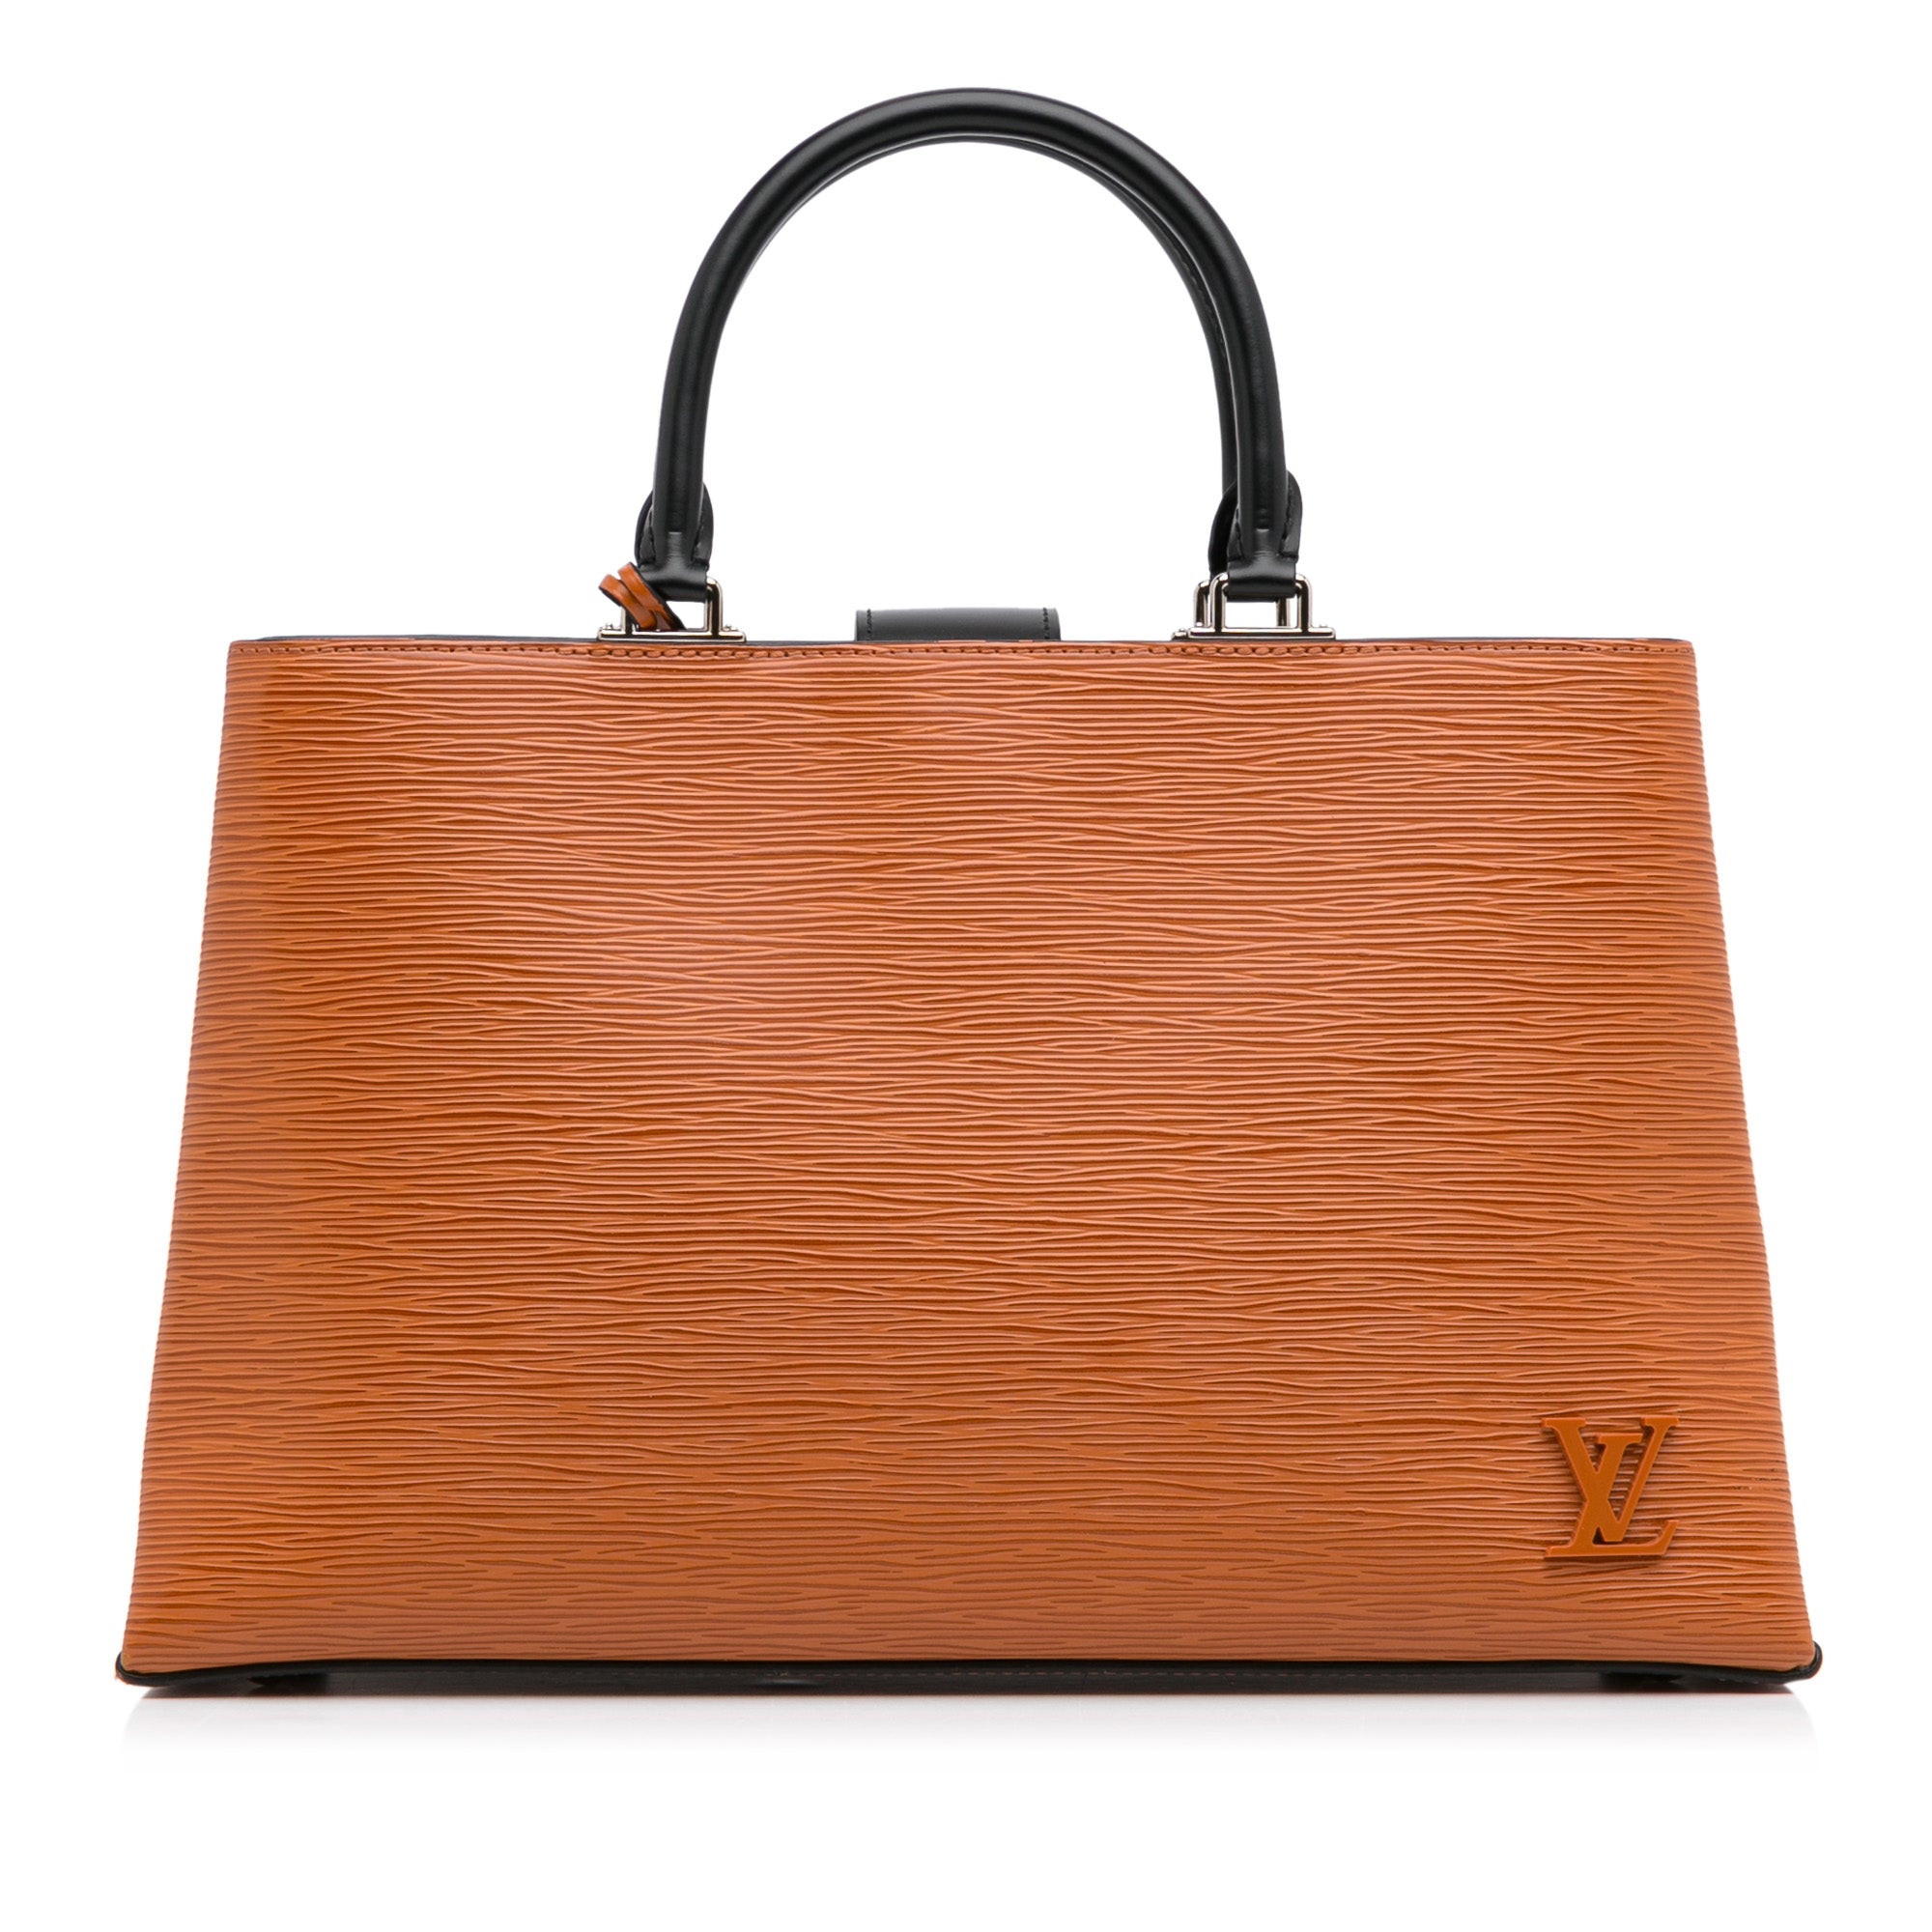 Louis Vuitton Kleber MM Epi Leather Satchel on SALE